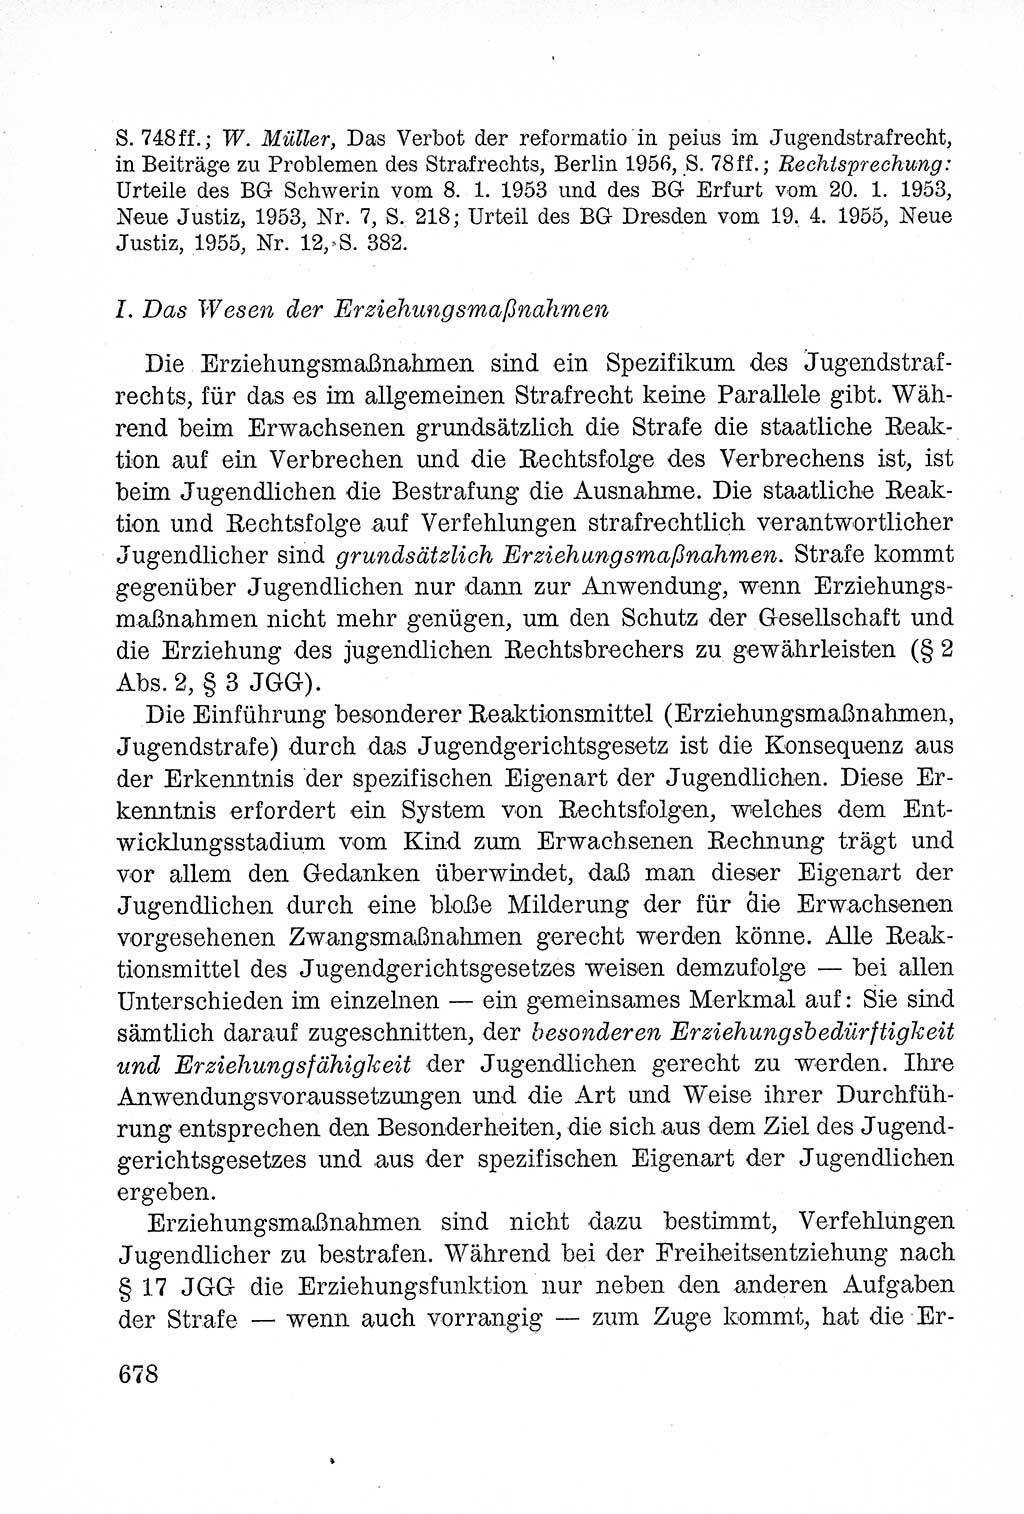 Lehrbuch des Strafrechts der Deutschen Demokratischen Republik (DDR), Allgemeiner Teil 1957, Seite 678 (Lb. Strafr. DDR AT 1957, S. 678)